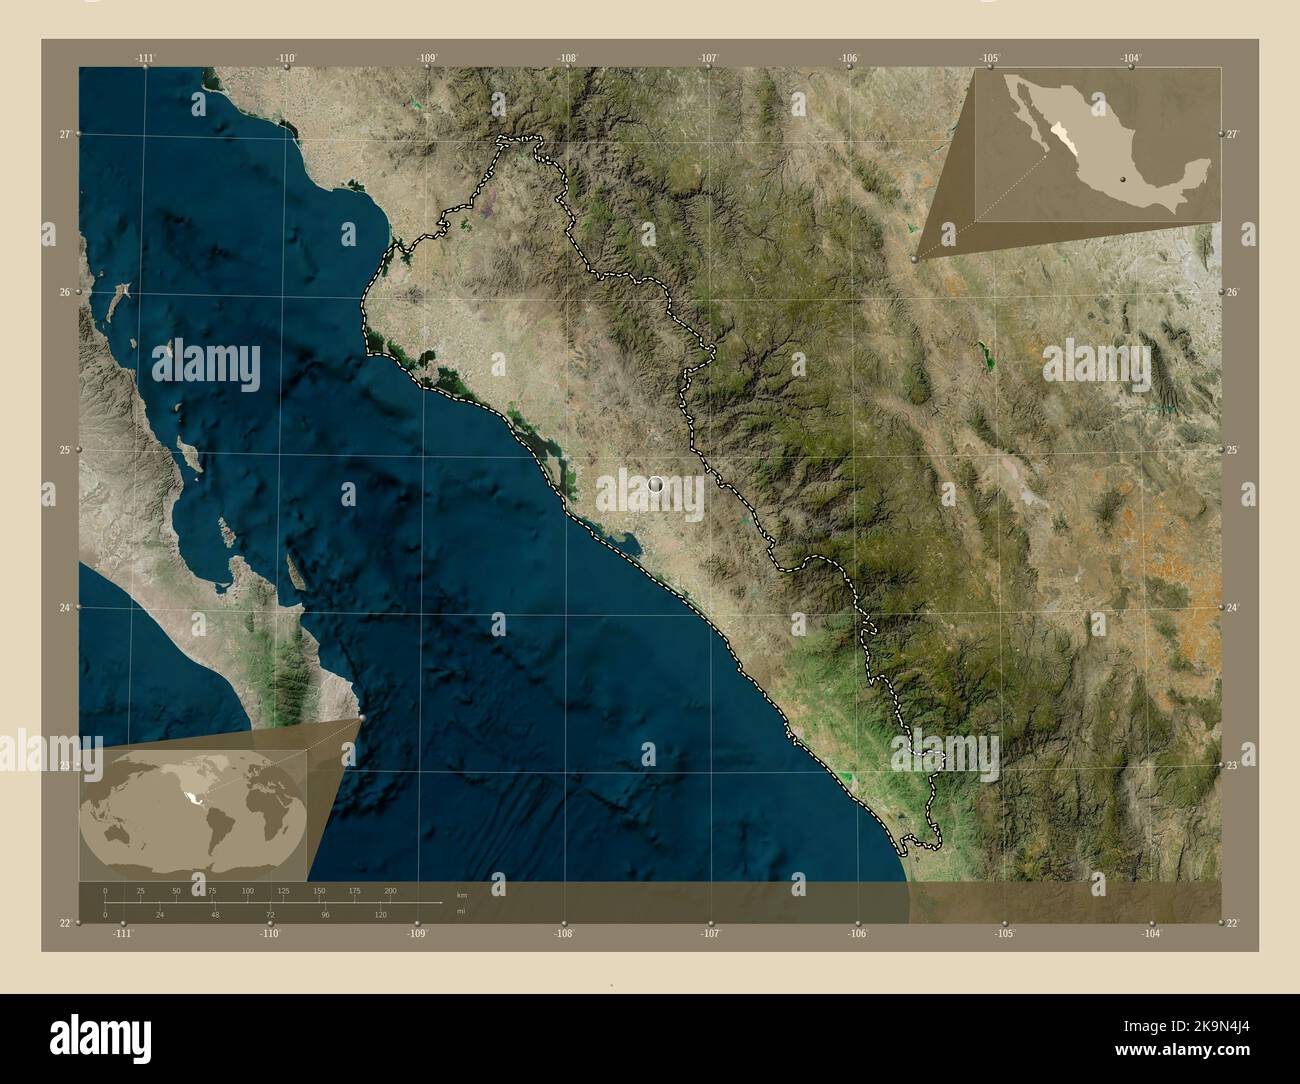 Genera Grafico De Mapa De Sinaloa 0130